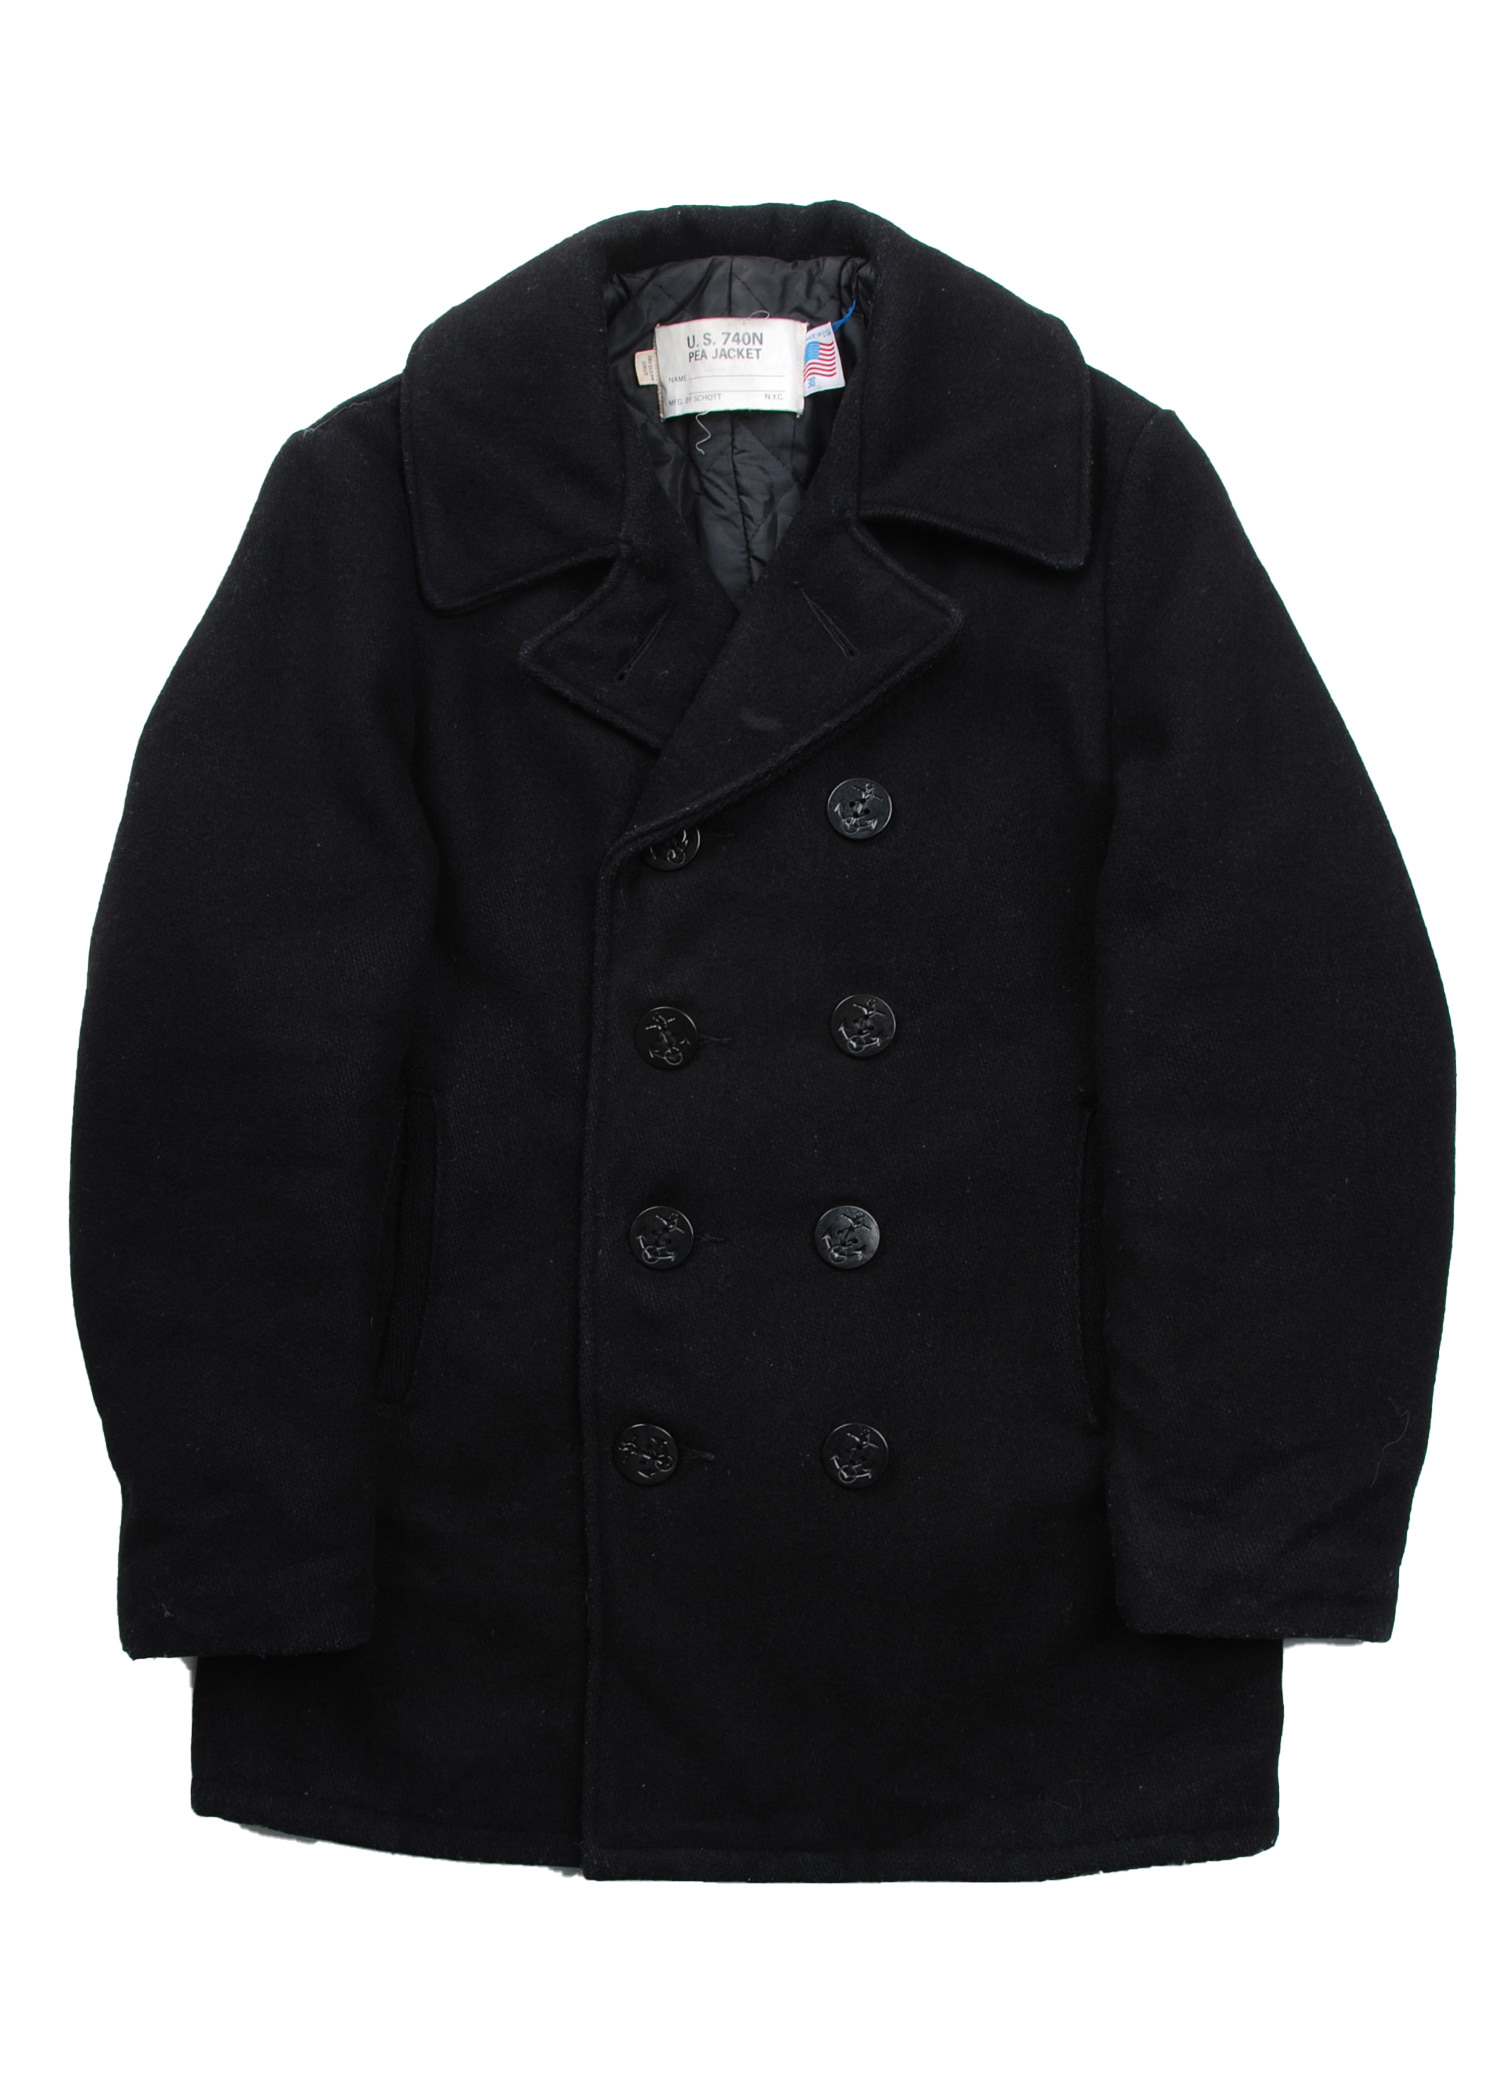 Schott 740N pea coat